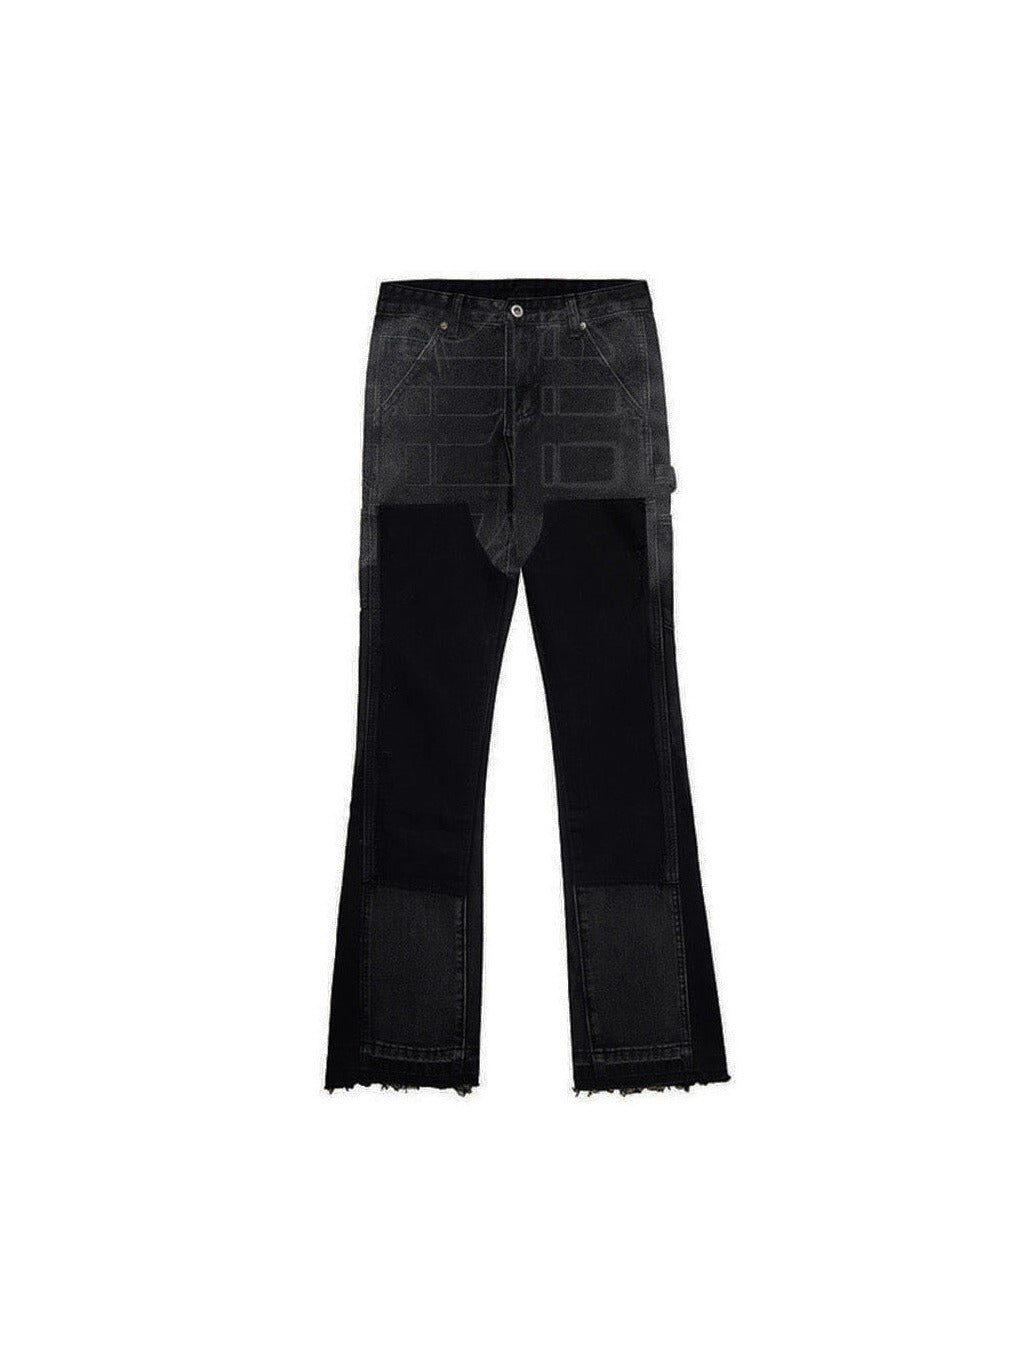 Sole et. Al Metro Flared Carpenter Denim Jeans : Black